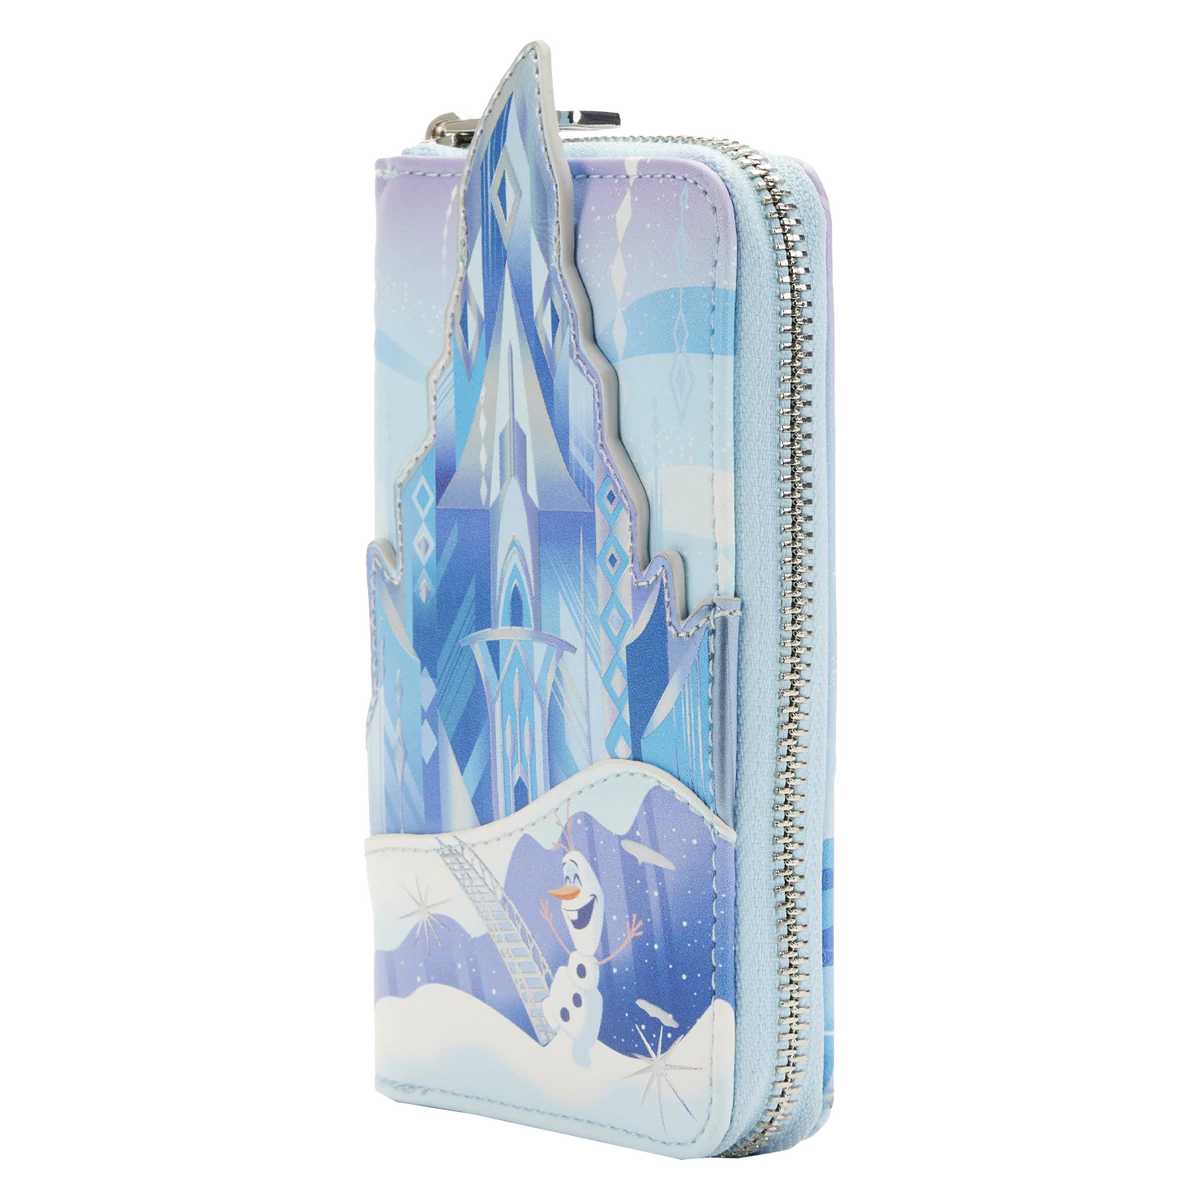 Disney Frozen Castle Series Wallet